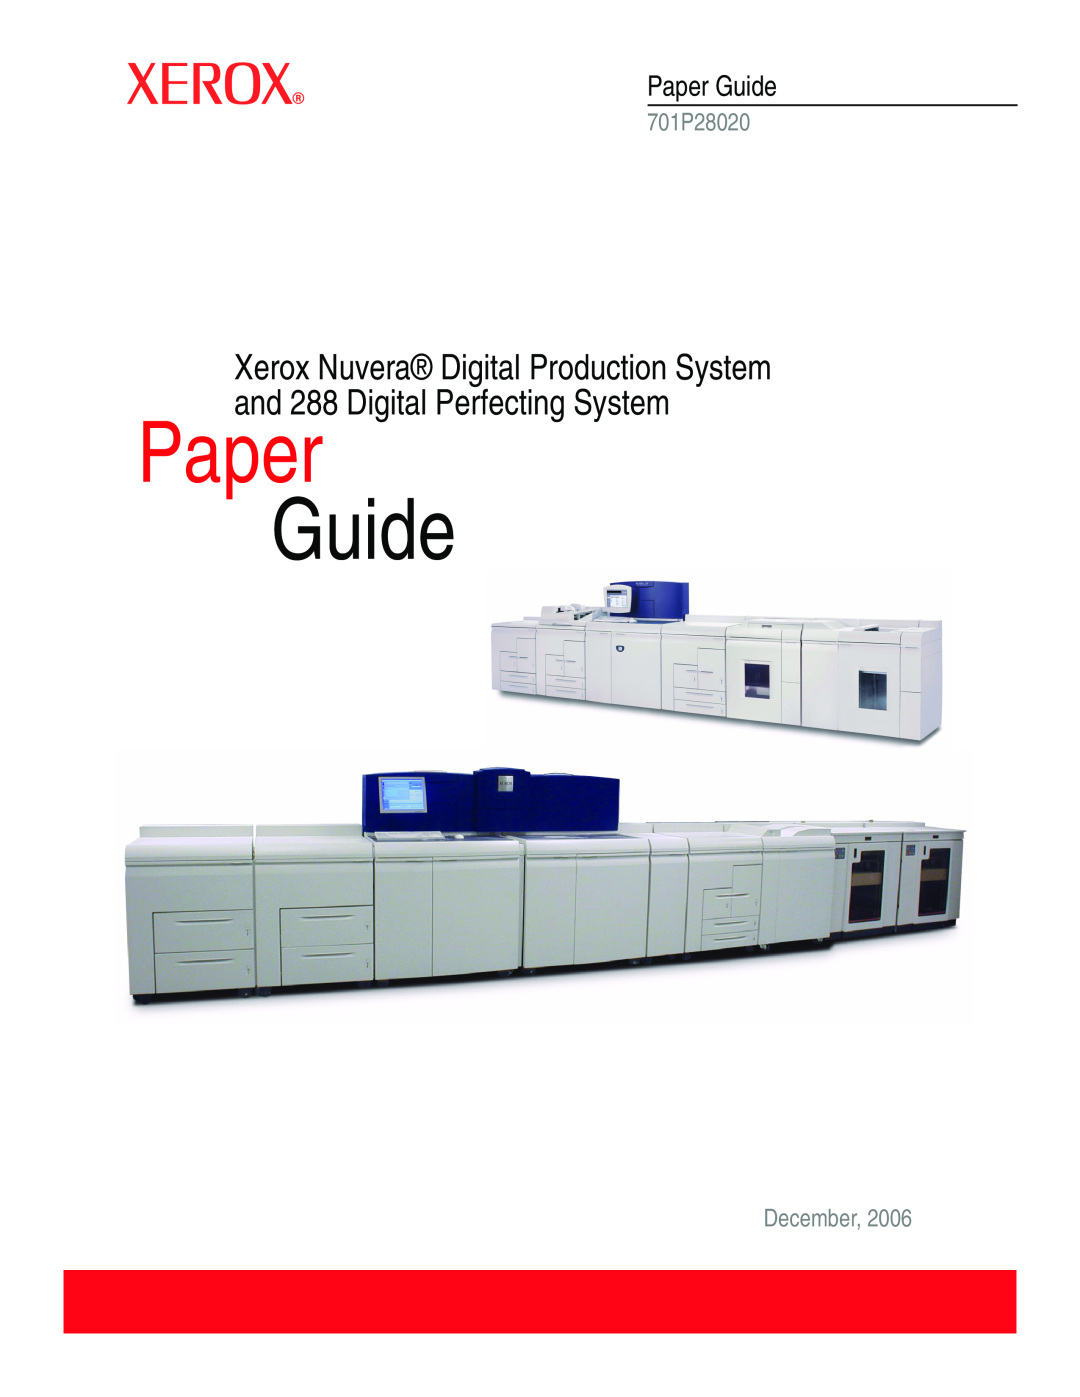 Xerox 701P28020 manual Paper Guide, December 